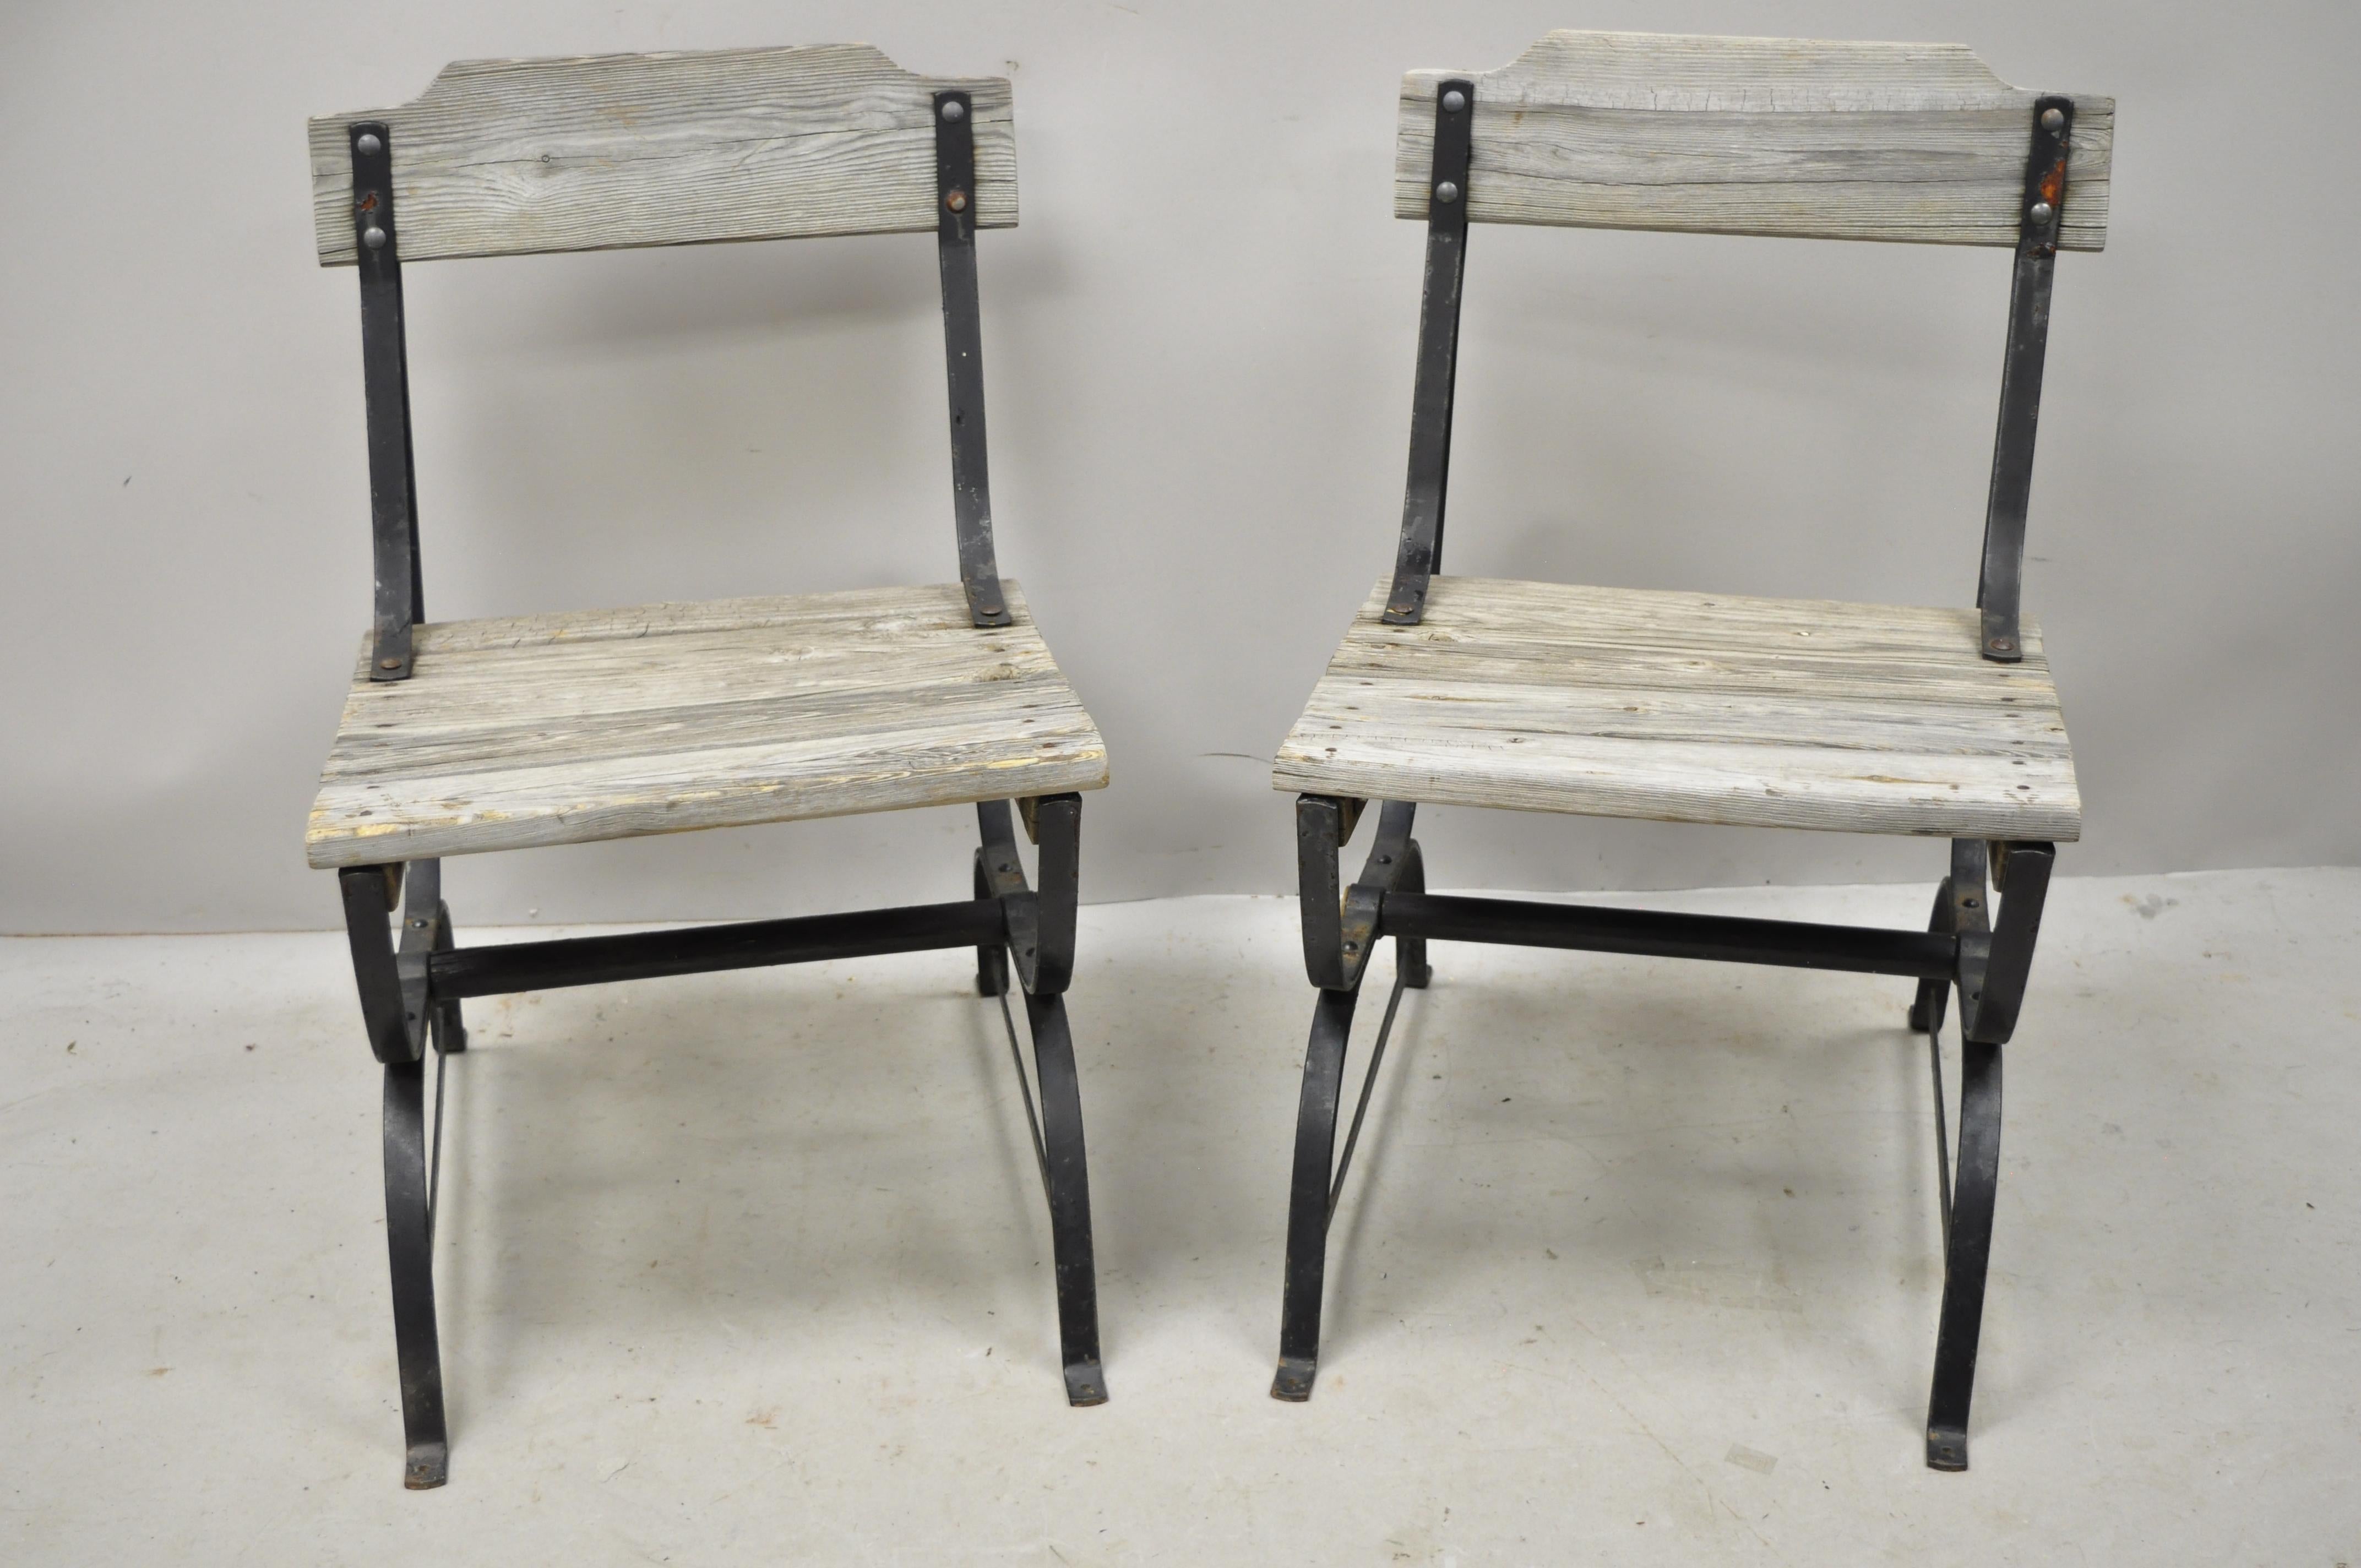 Paire d'anciennes chaises industrielles françaises en fer forgé avec assise et dossier en bois. Cet article présente des sièges et des dossiers à lattes en bois, une construction en fer forgé, une base en bois, une finition vieillie, un très bel